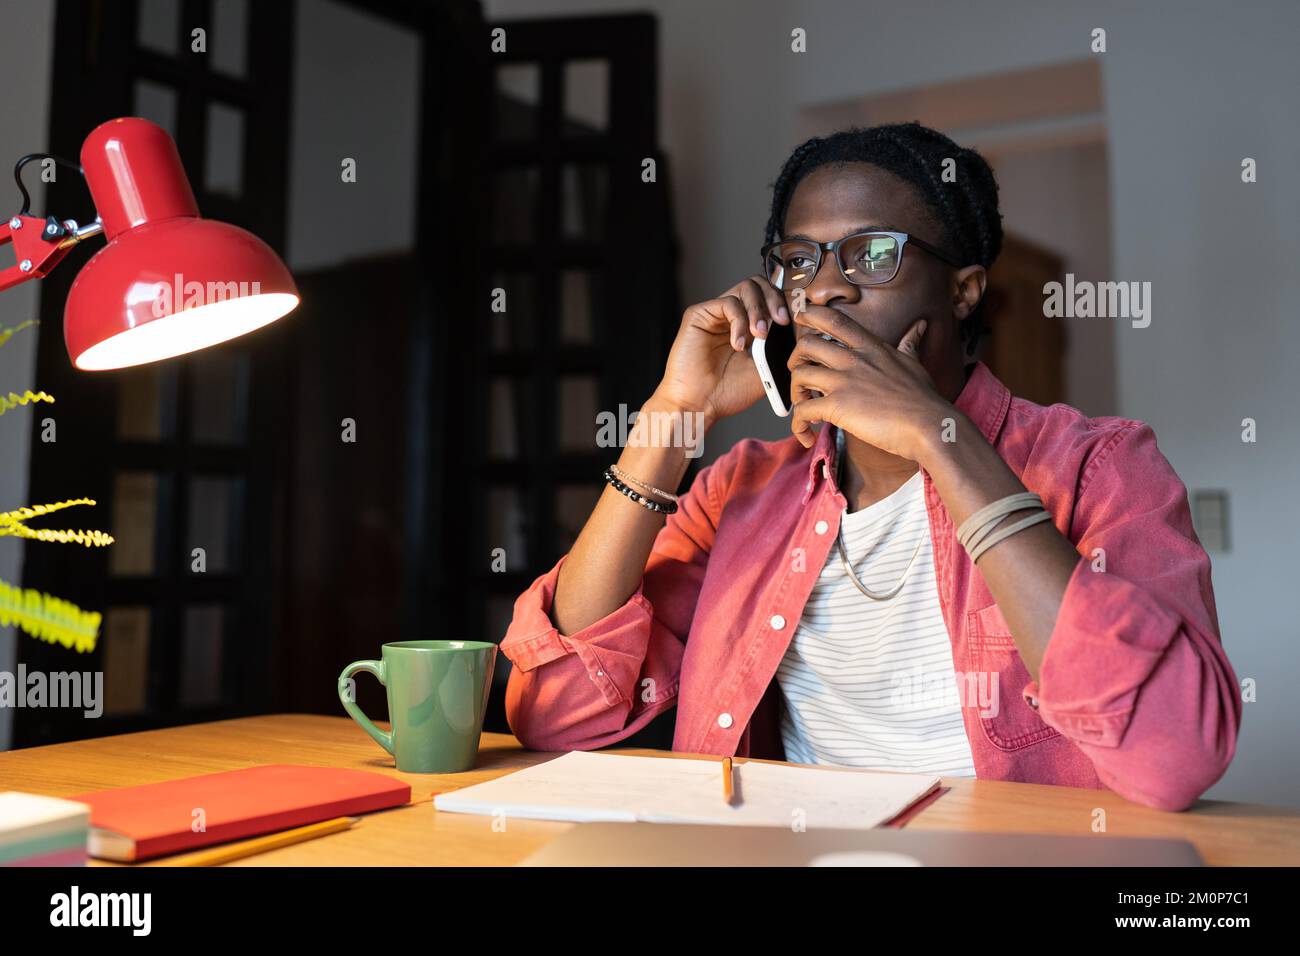 Ein besorgter, frustrierter afrikanischer Student, der telefoniert, während er zu Hause lernt Stockfoto